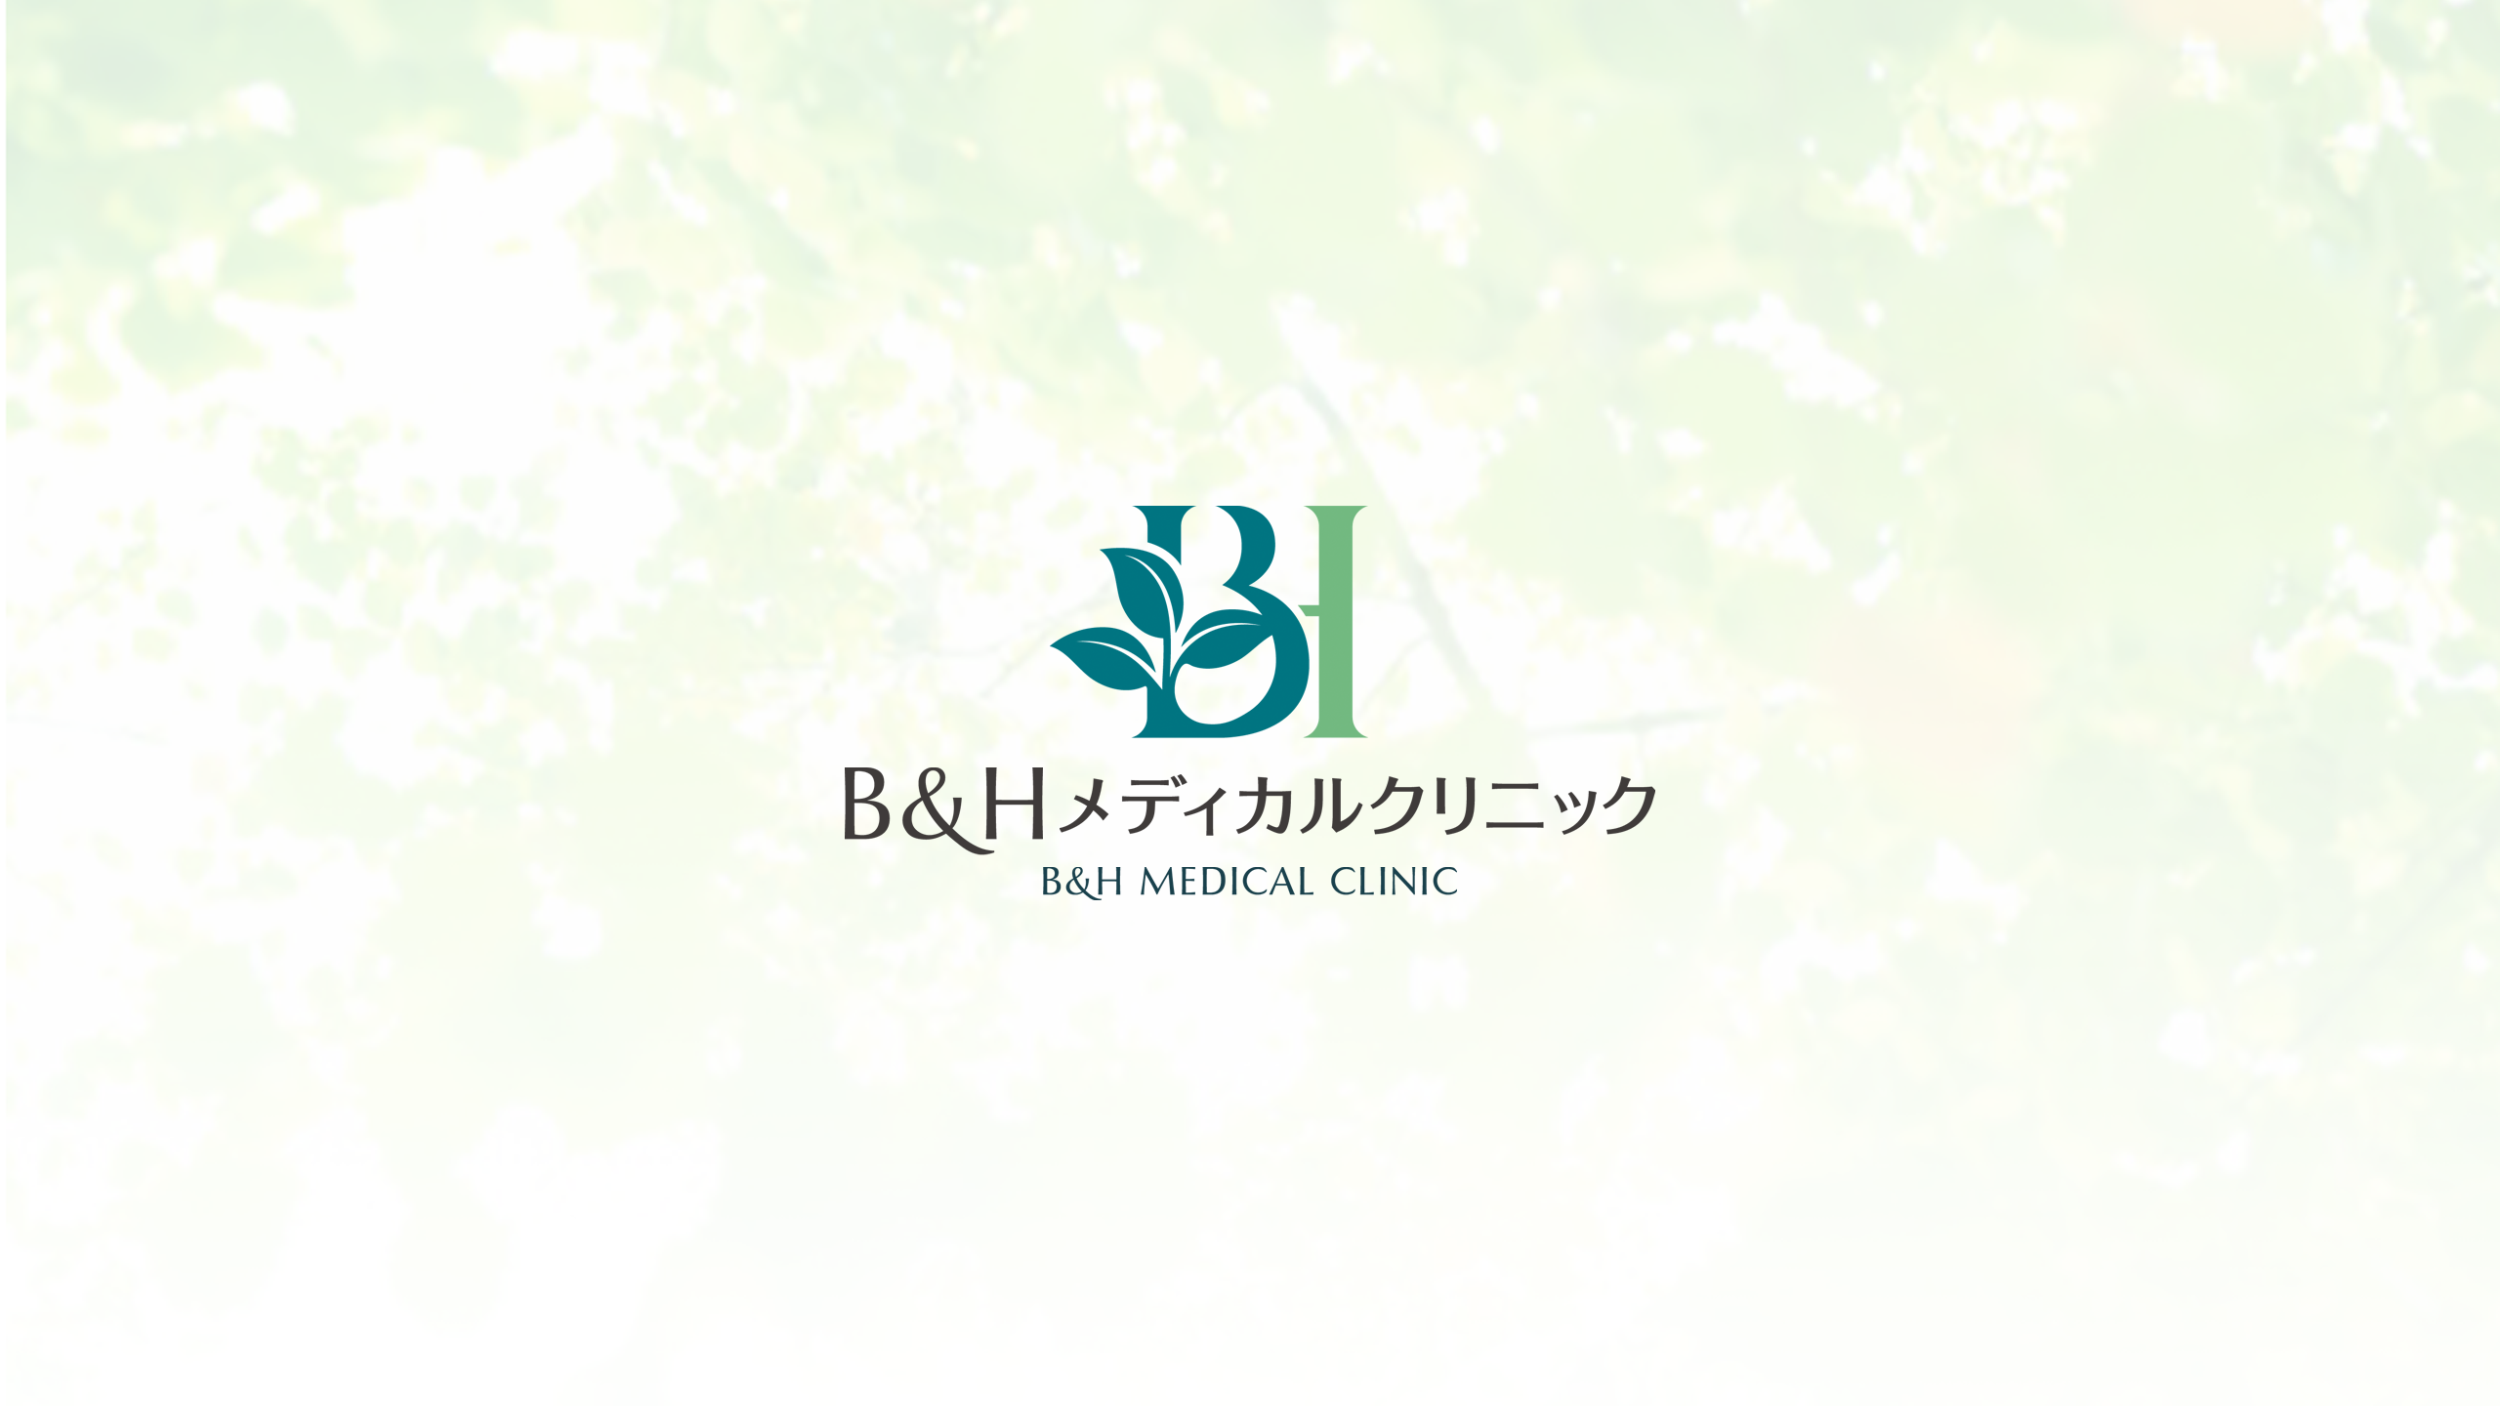 B&Hメディカルクリニックのロゴ